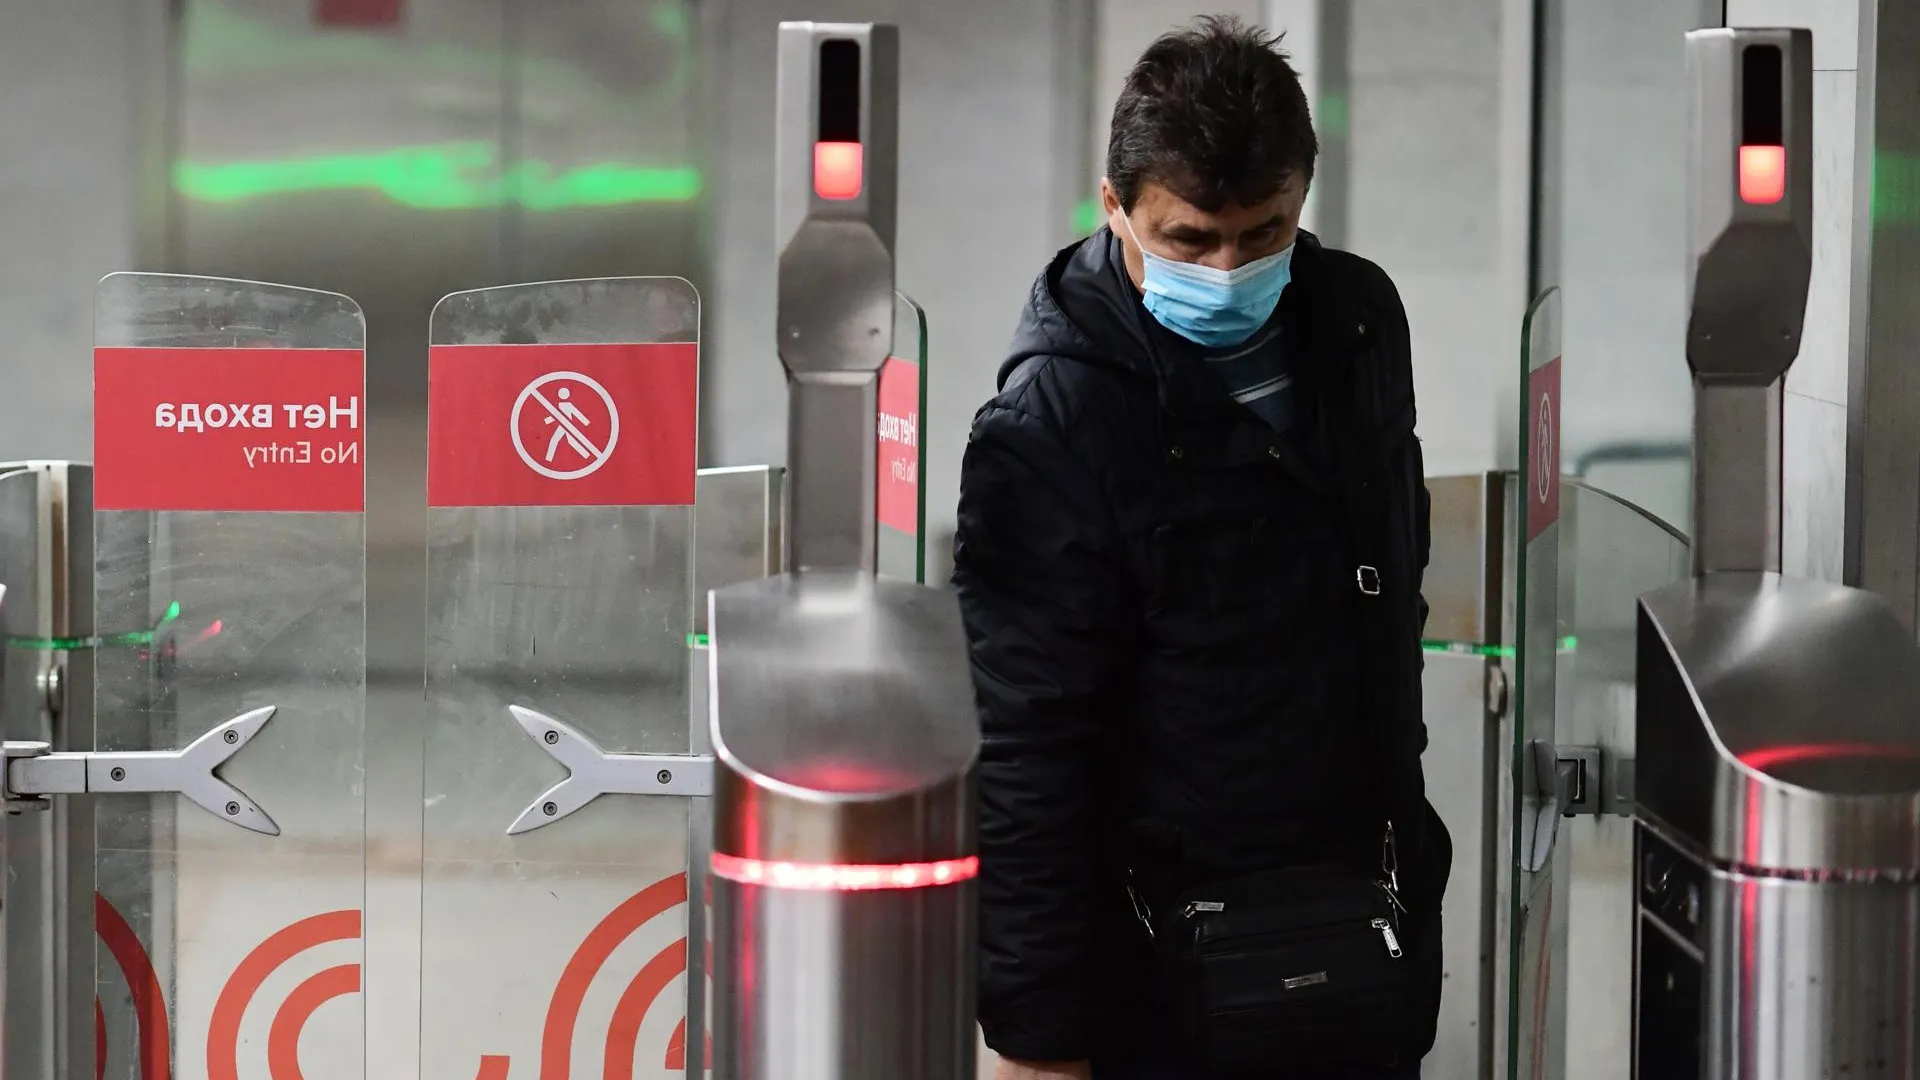 Биометрия в метро: как будет работать оплата лицом в московской подземке